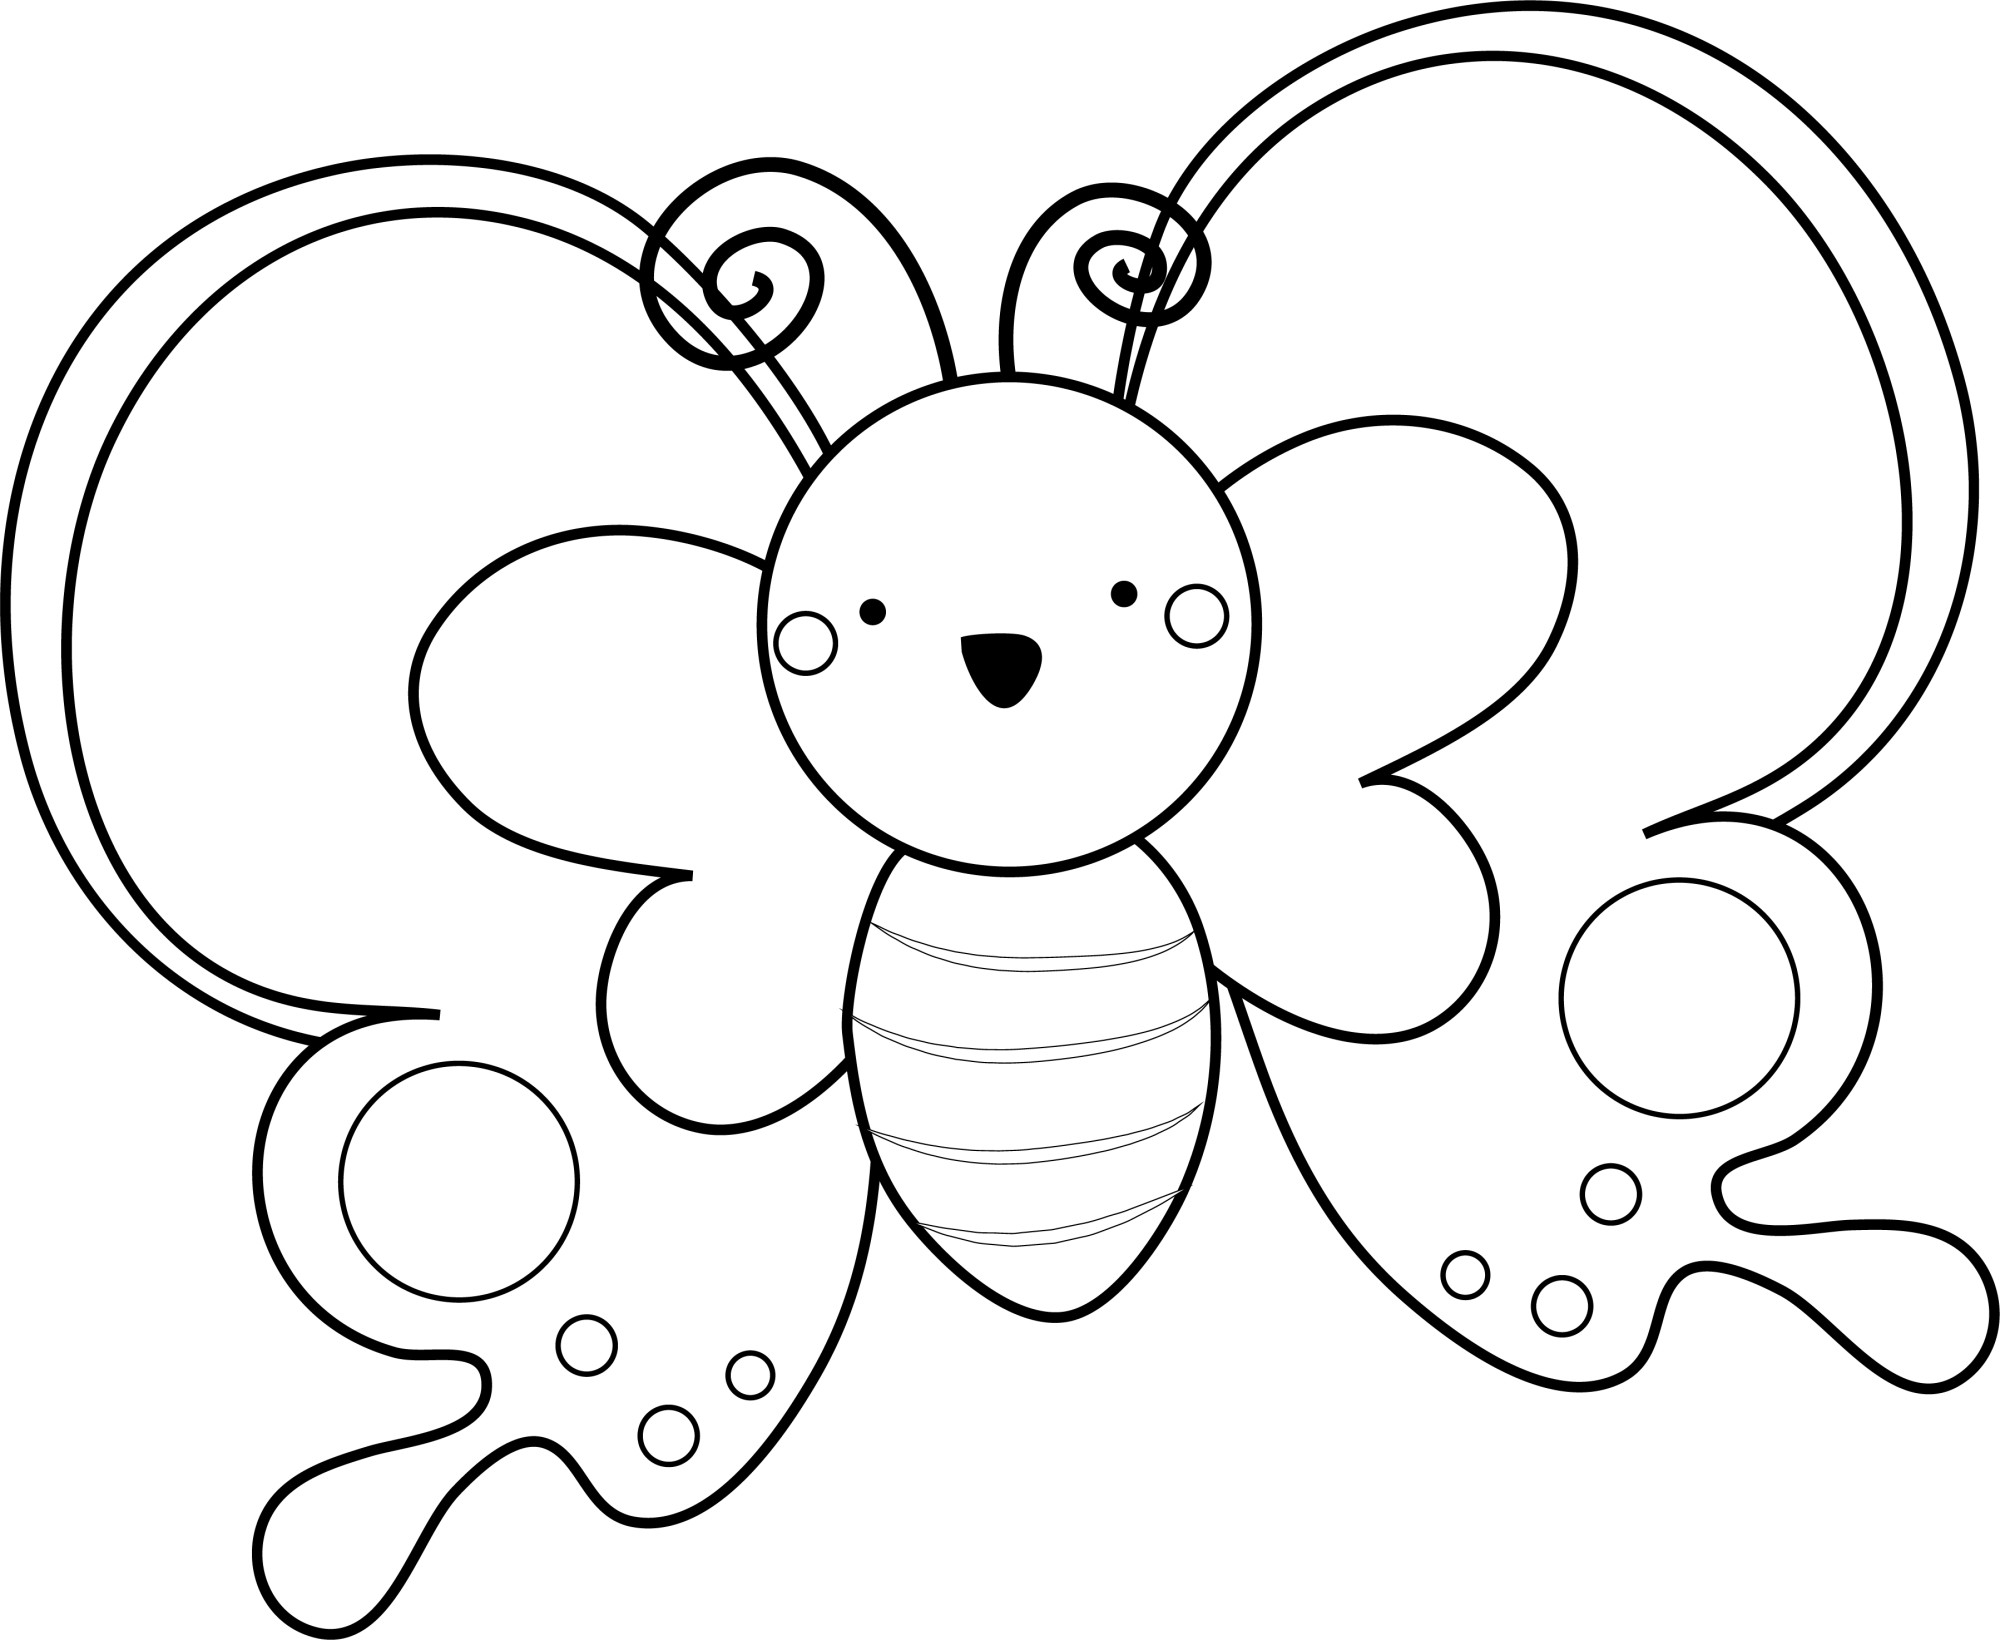 Раскраска для детей: маленькое мультяшное насекомое бабочка